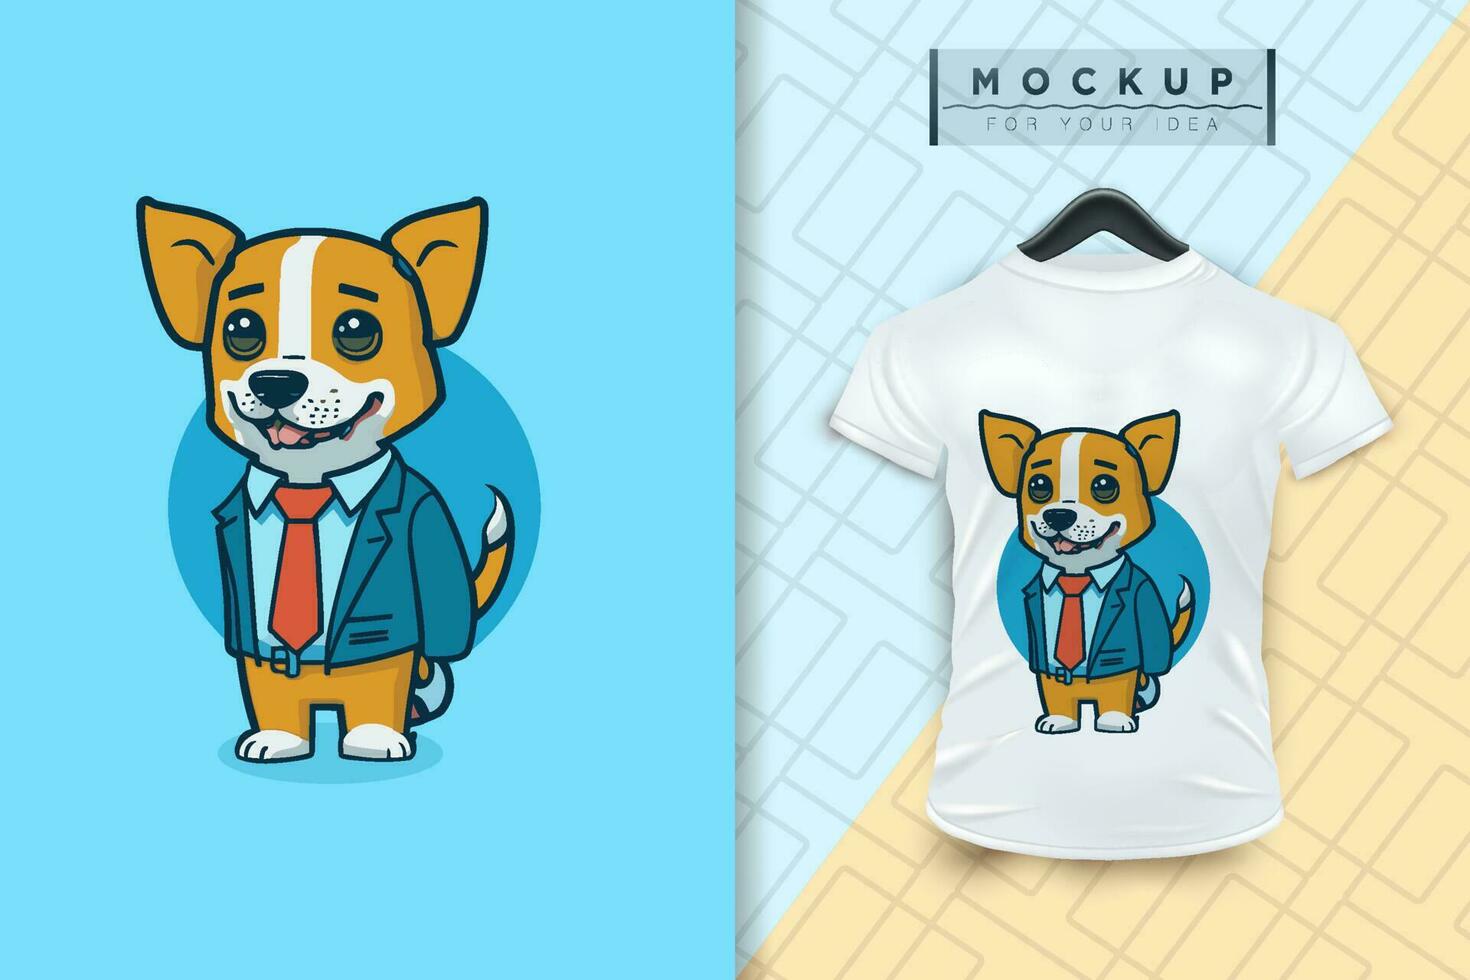 en hund bär en enhetlig tycka om ett kontor arbetstagare och en affärsman i platt tecknad serie karaktär design vektor